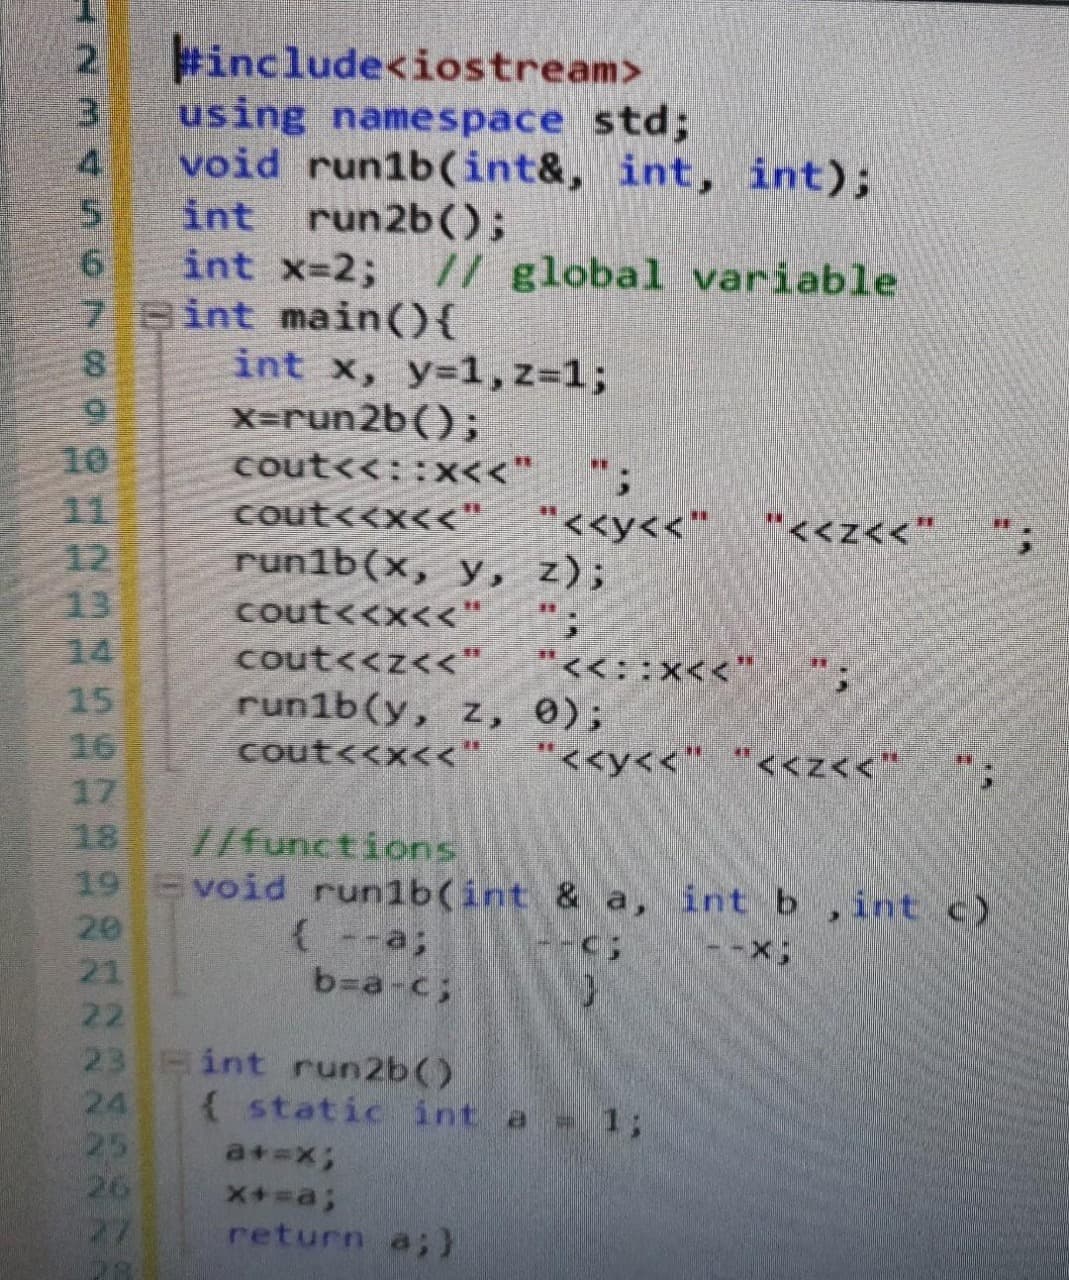 #include<iostream>
3.
using namespace std;
4.
void run1b((int&, int, int);
int run2b();
int x-2;
7 Bint main(){
// global variable
int x, y=1,z=1;
X=run2b();
10
cout<<::x<<"
11
12
13
14
"<<y<<"
cout<<x<<"
run1b(x, y, z);
"<<z<<"
cout<<x<<"
cout<<z<<"
run1b(y, z, 0);
cout<<x<<" "<<y<<" "<<z<<*
"<<::x<<"
15
16
17
18
19 void run1b(int & a, int b,int c)
20
21
//functions
(--a;
b=a-c;
22
23 int run2b()
24
25
26
27
( static int a 1;
a+=x3;
return a;)
